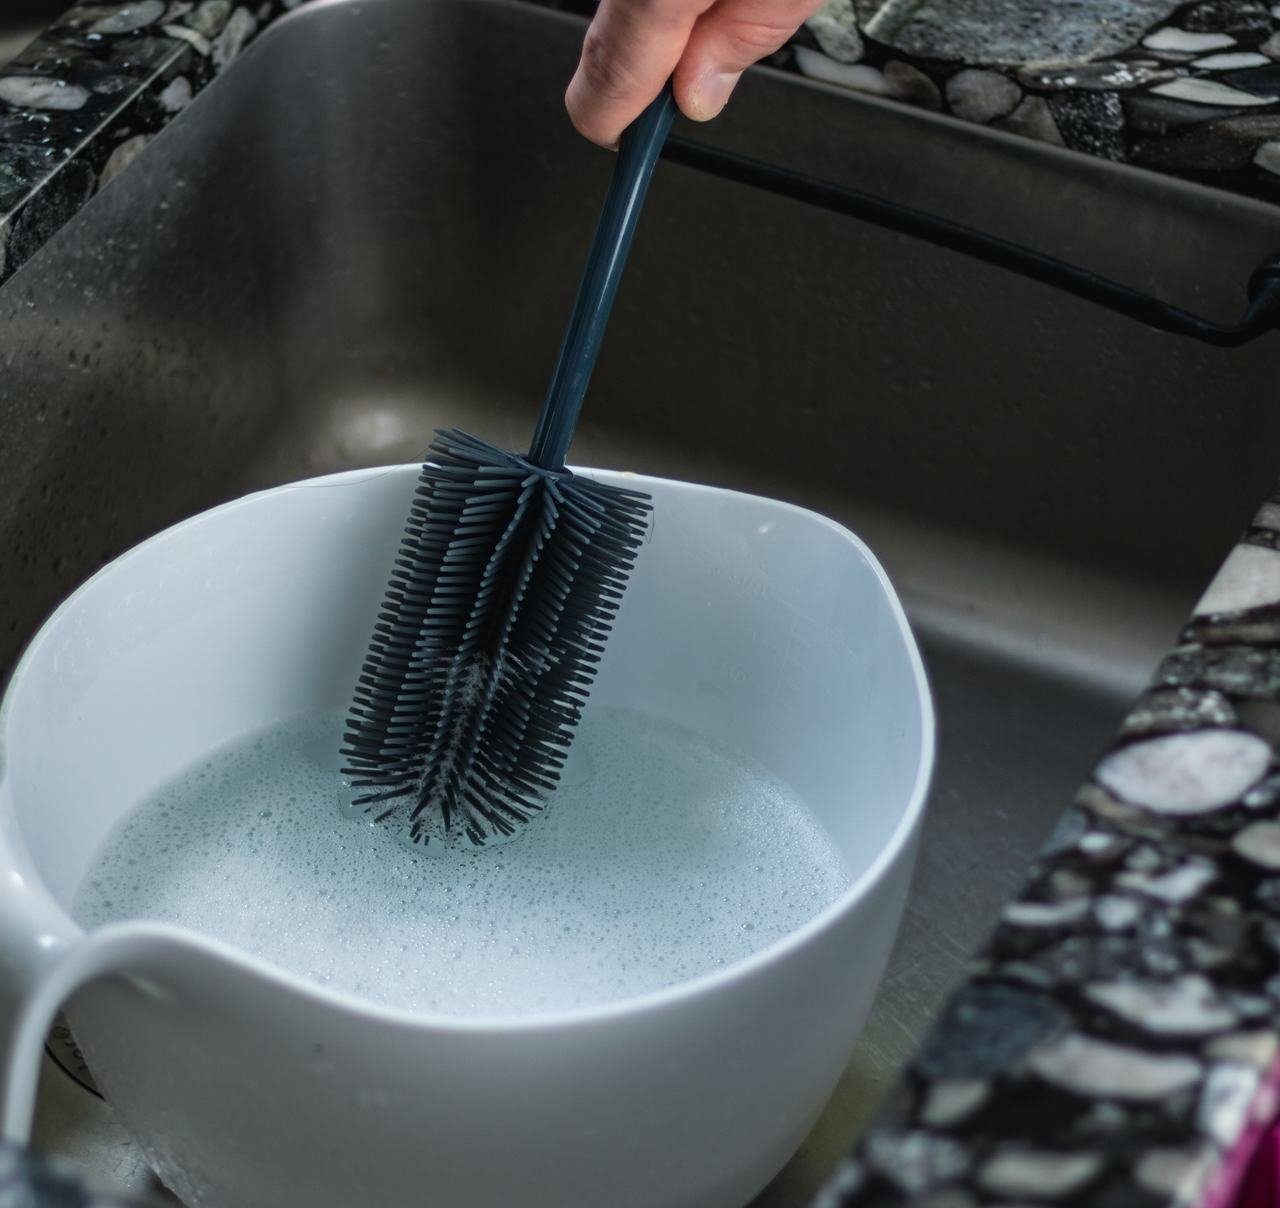 Hygienisch Kochblume Silikon Reinigungsbürste Spülbürste, hellblau